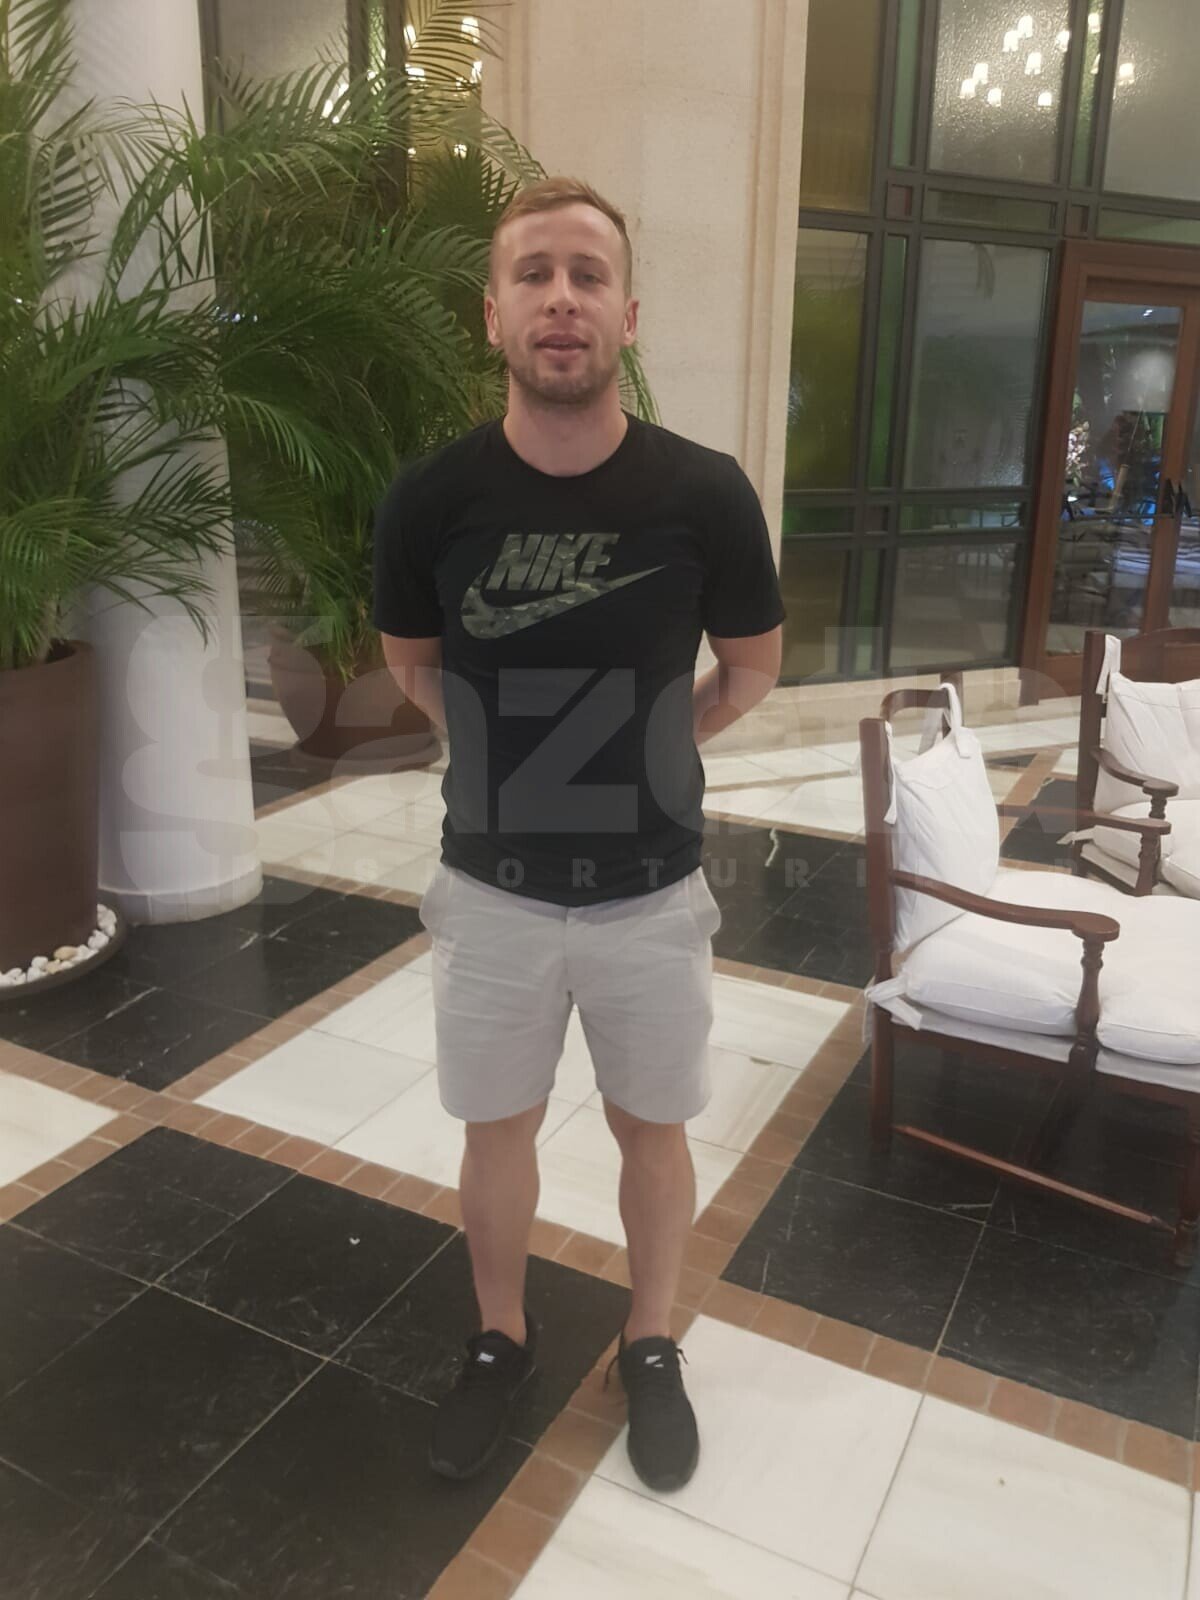 EXCLUSIV VIDEO + FOTO Filip Mrzljak a ajuns în cantonamentul lui Dinamo